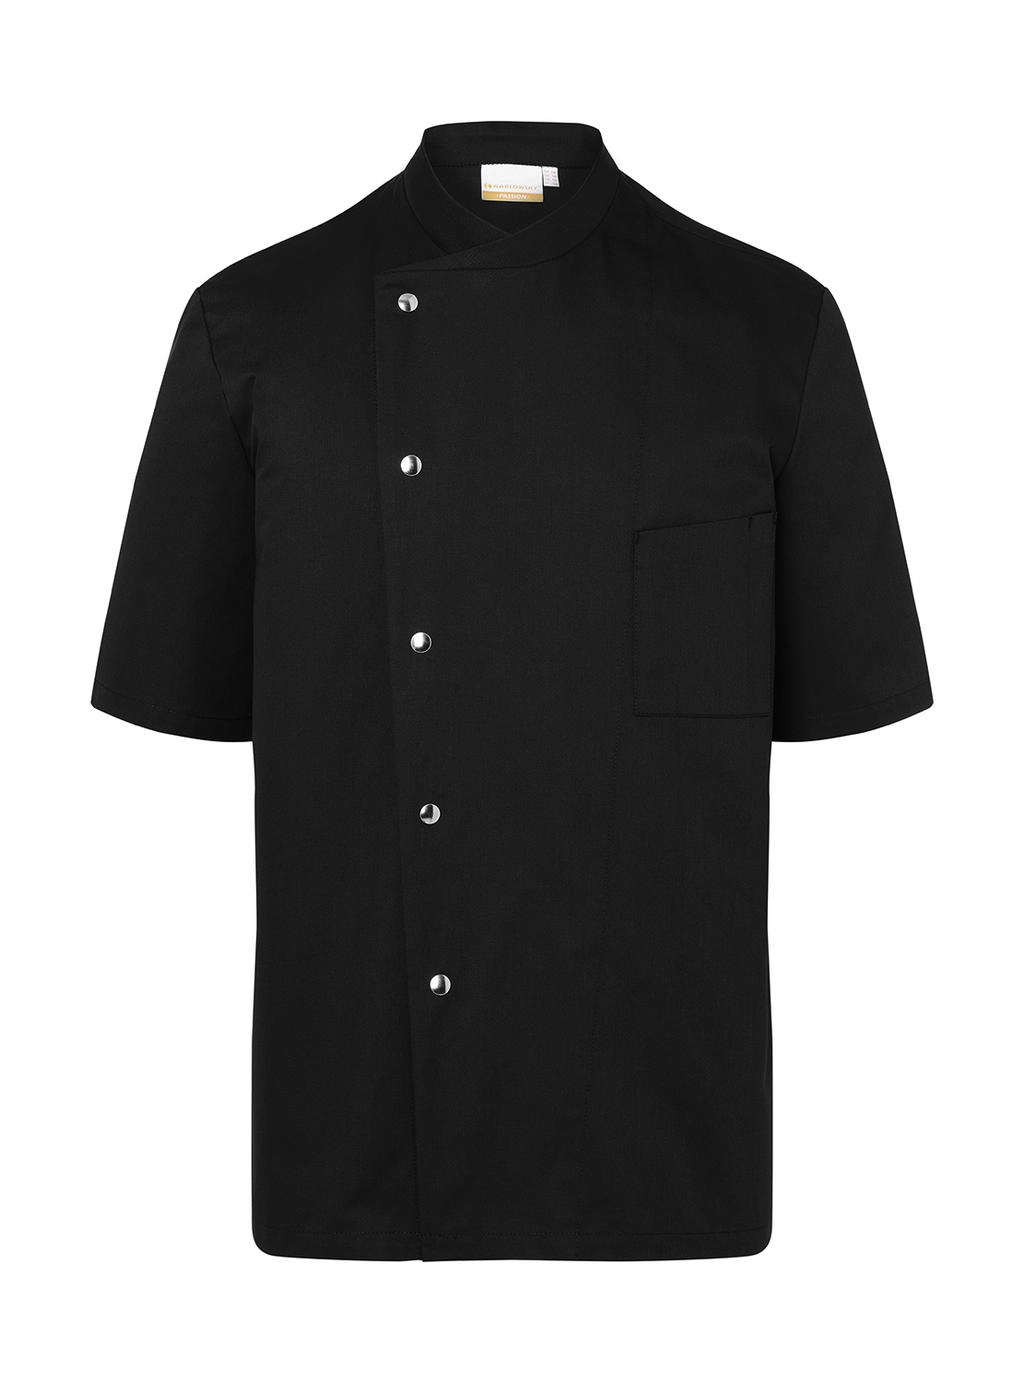 Chef Jacket Gustav Short Sleeve zum Besticken und Bedrucken in der Farbe Black mit Ihren Logo, Schriftzug oder Motiv.